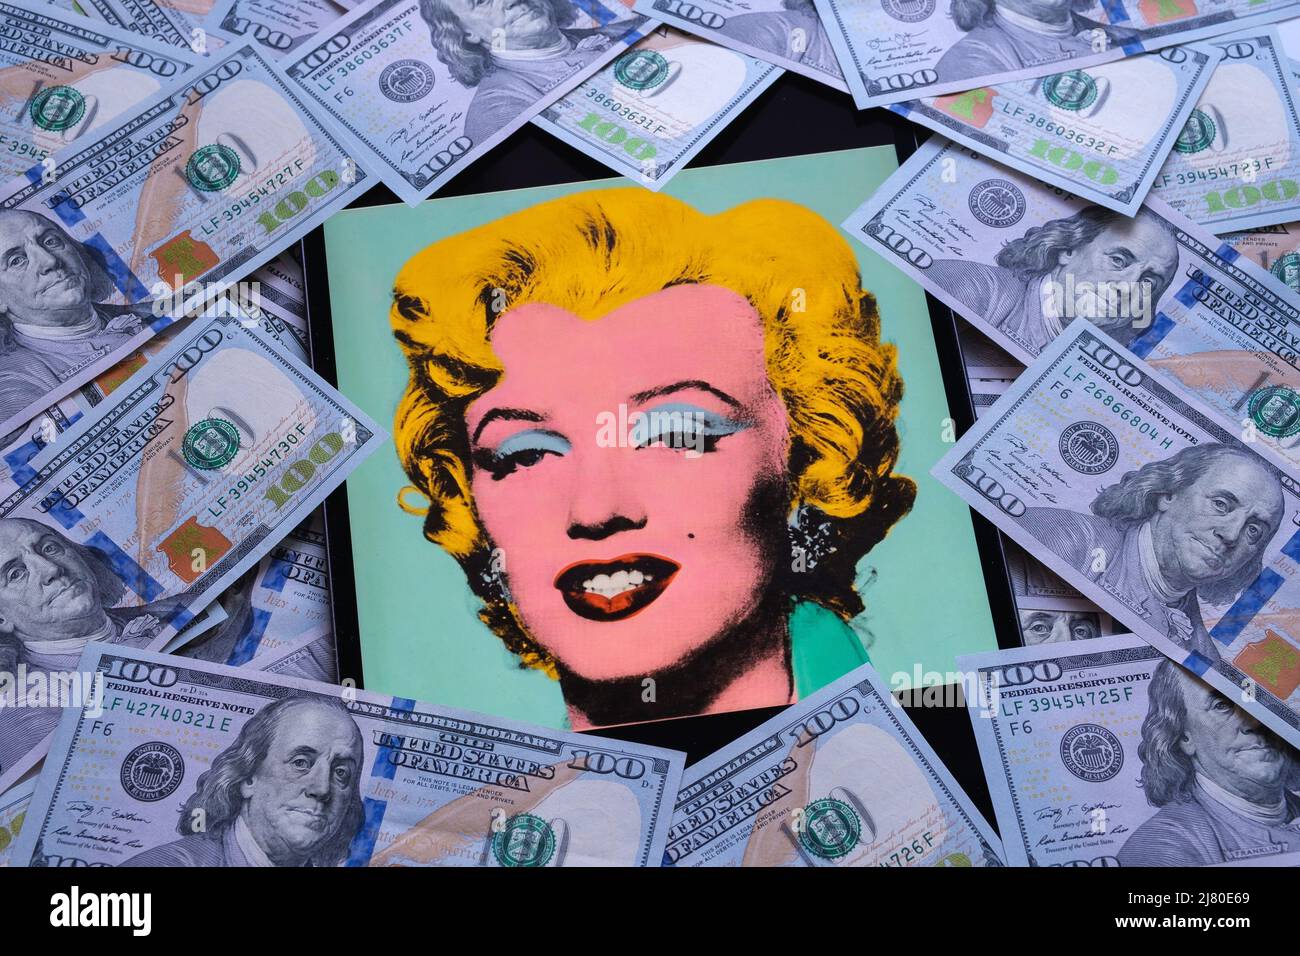 Tourné Sage Blue Marilyn sur un écran d'ipad entouré de billets de banque en dollars. Un portrait de Marilyn Monroe par Andy Warhol. Stafford, Royaume-Uni Banque D'Images